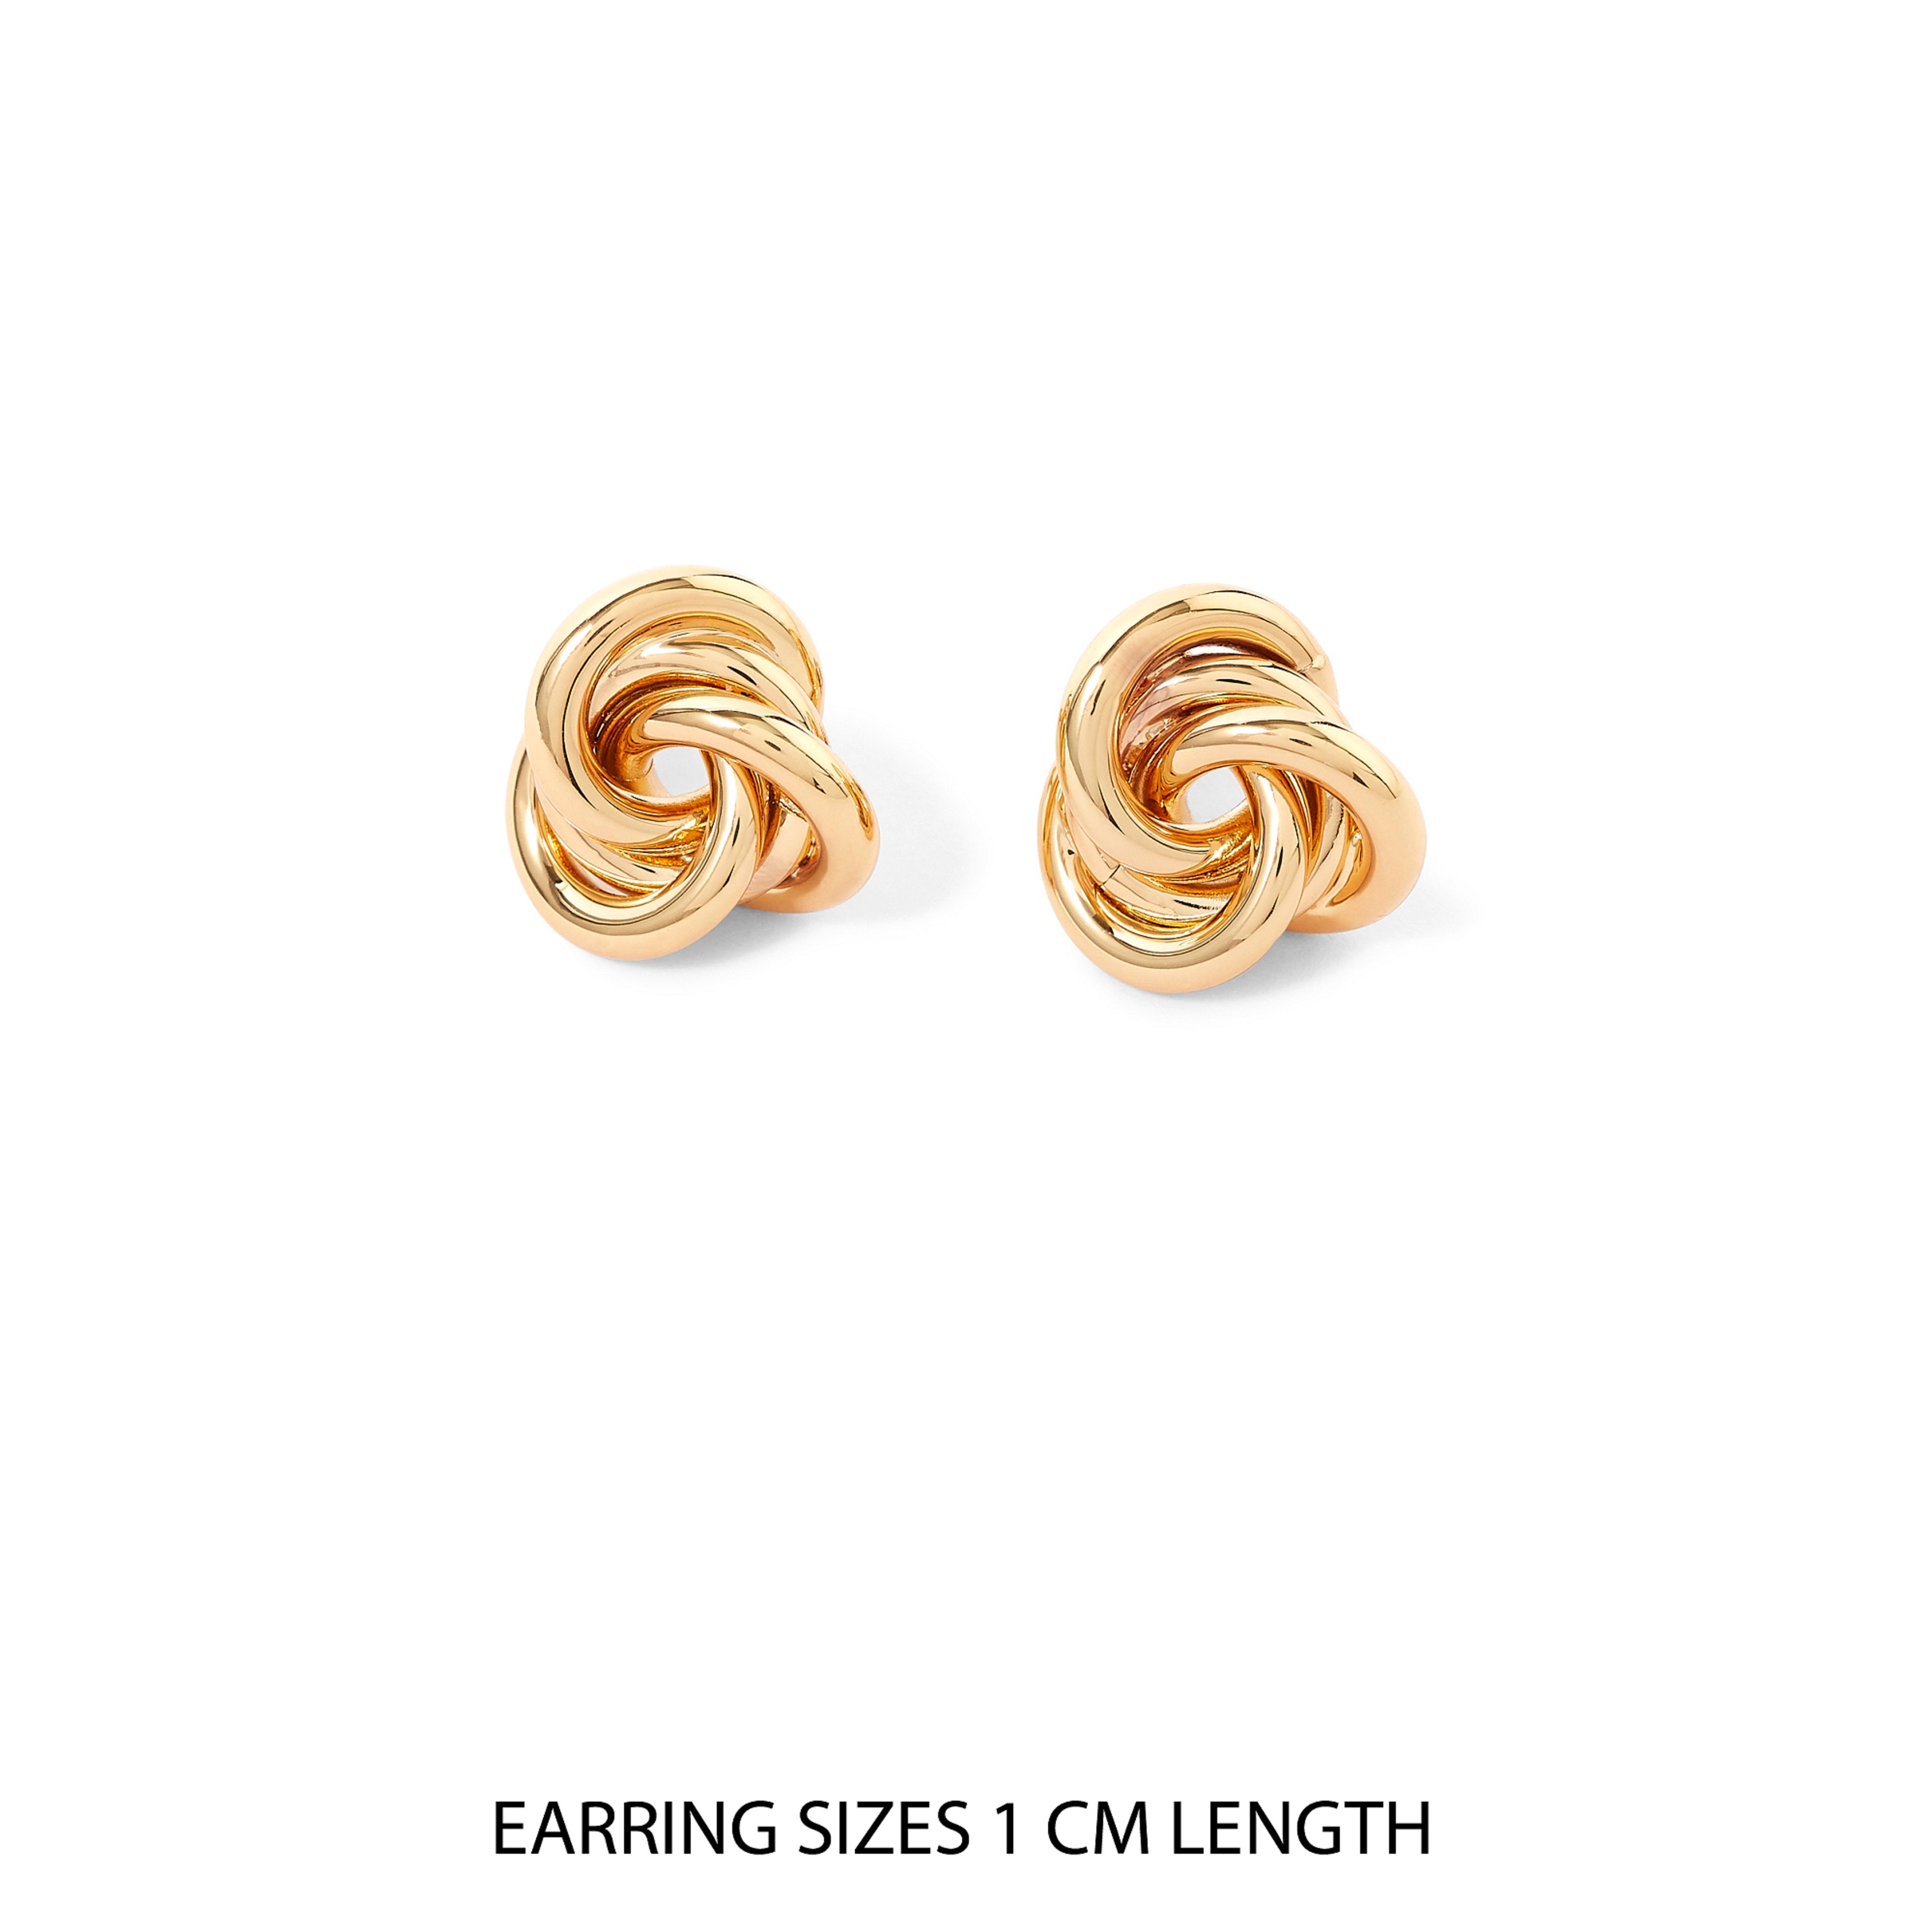 Accessorize London Women's Gold Knot Stud Earring